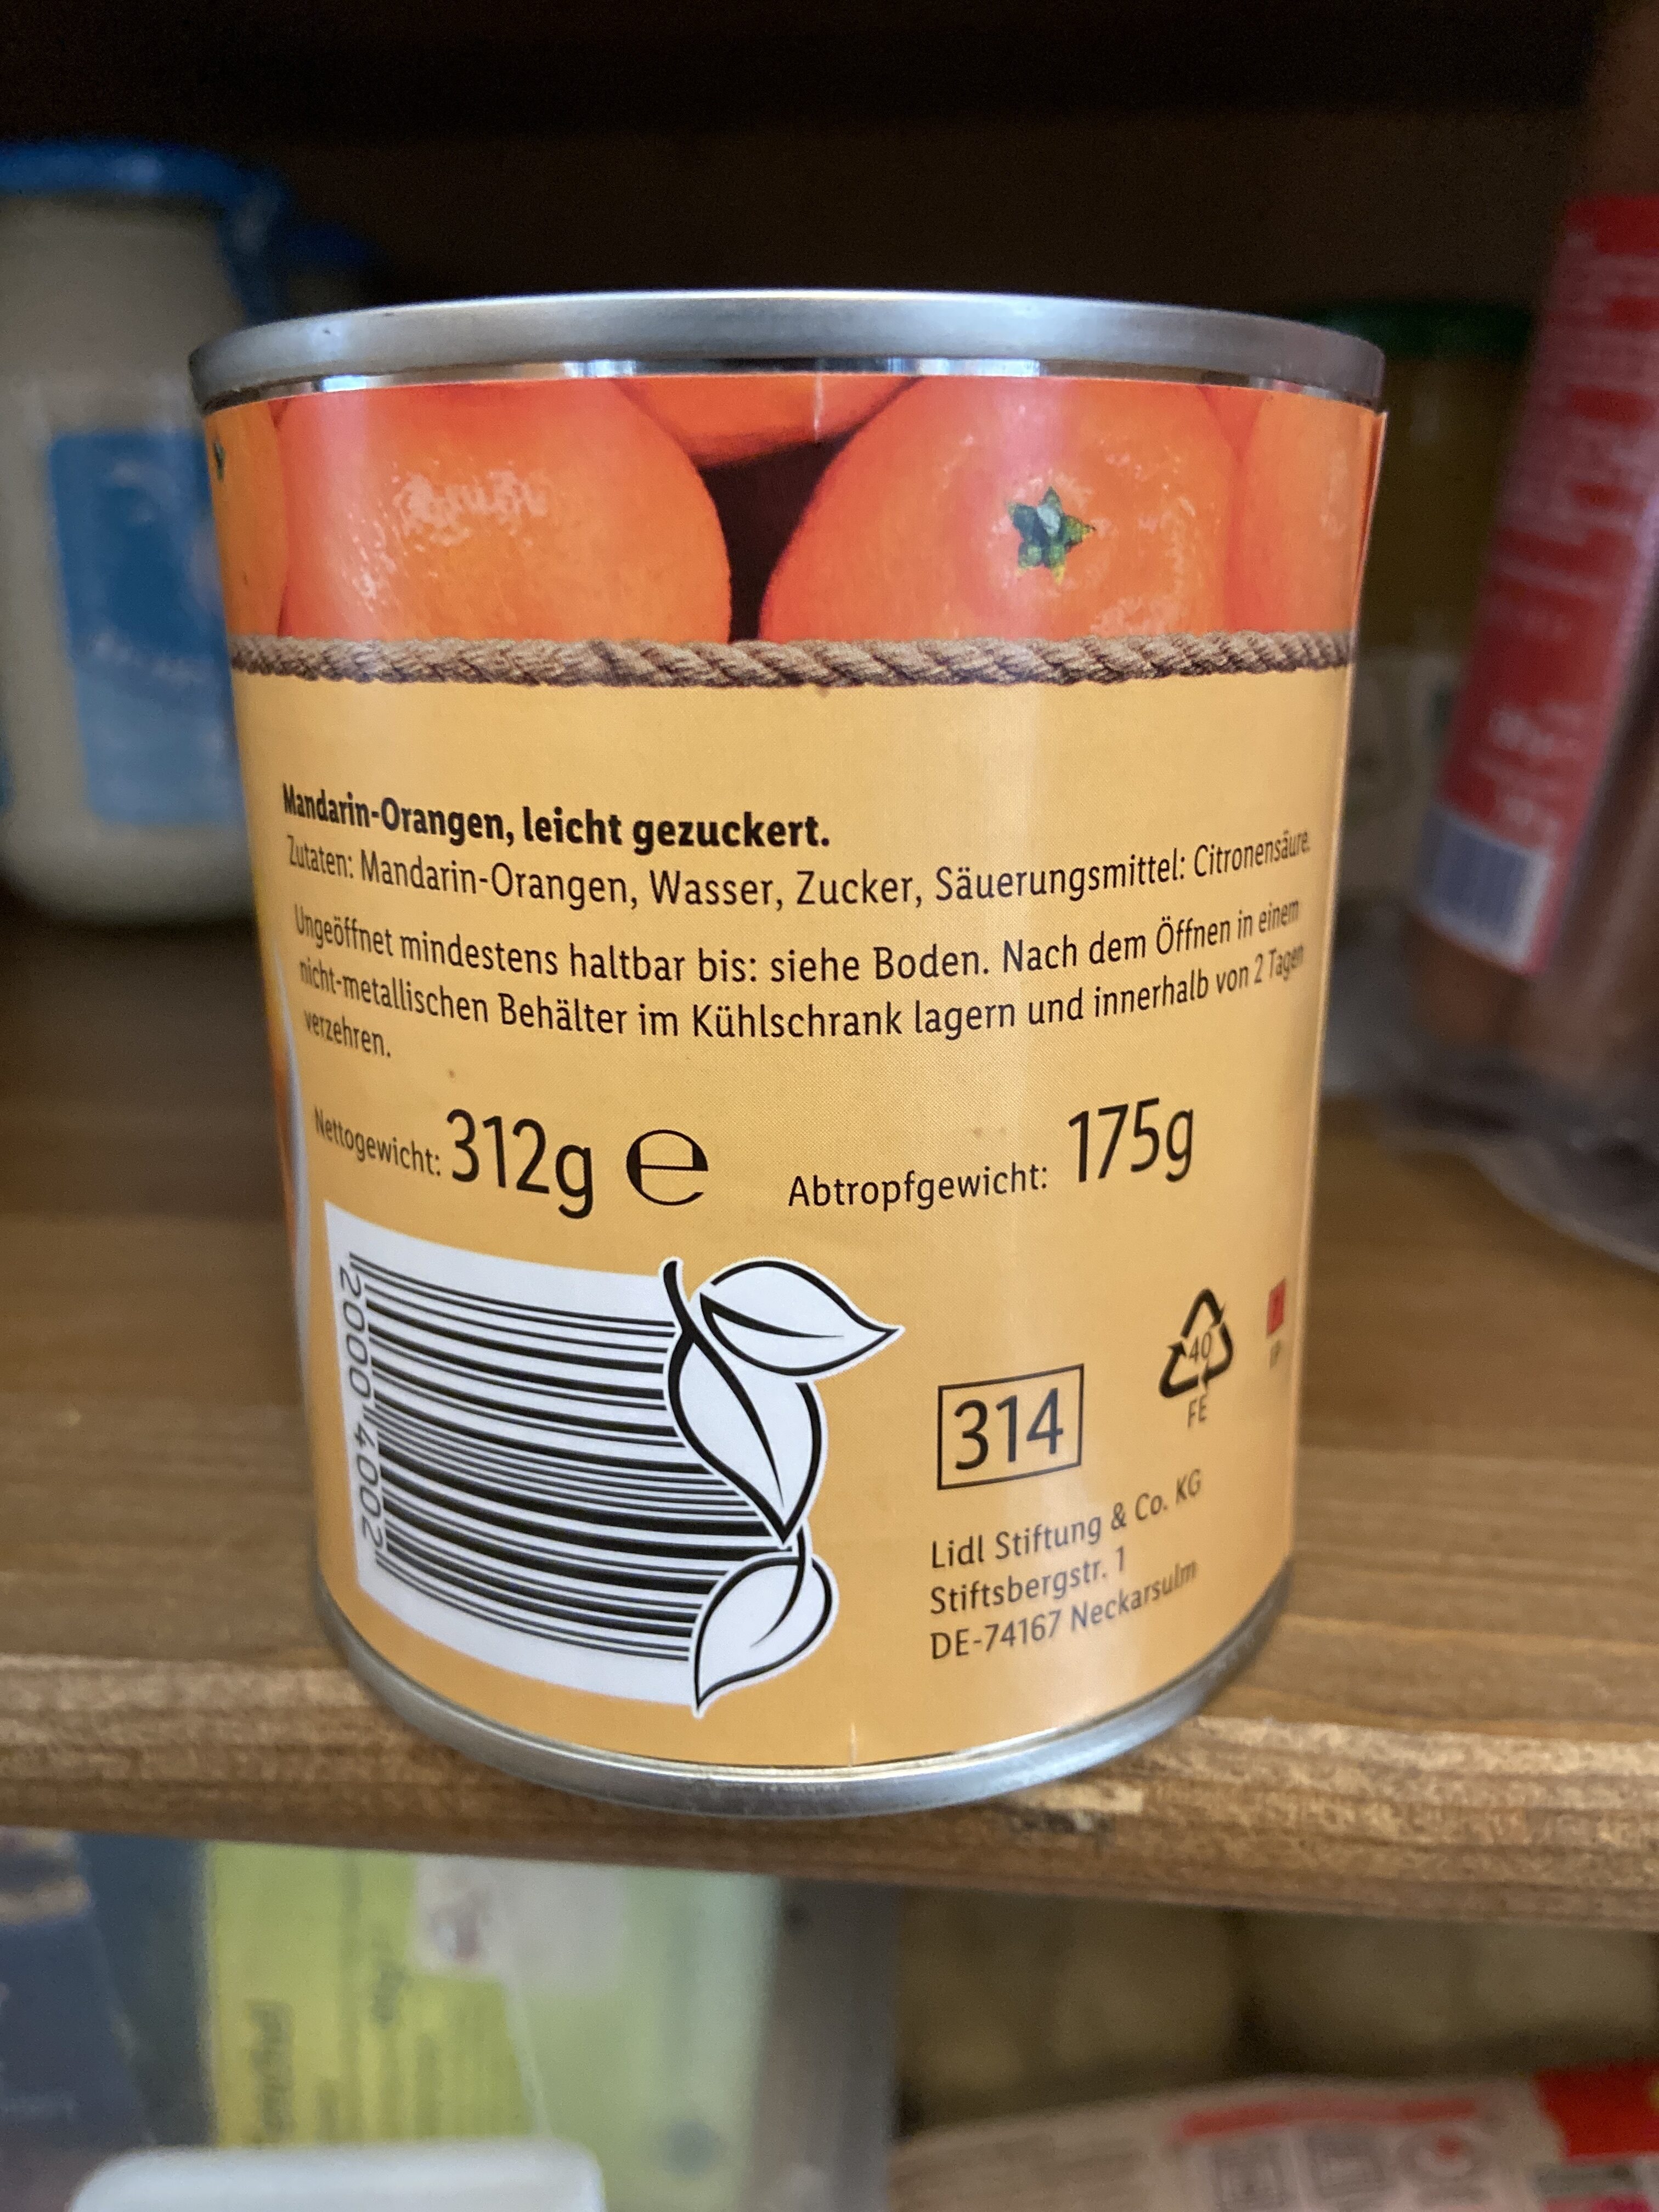 Mandarin-Orangen - Ingredients - de